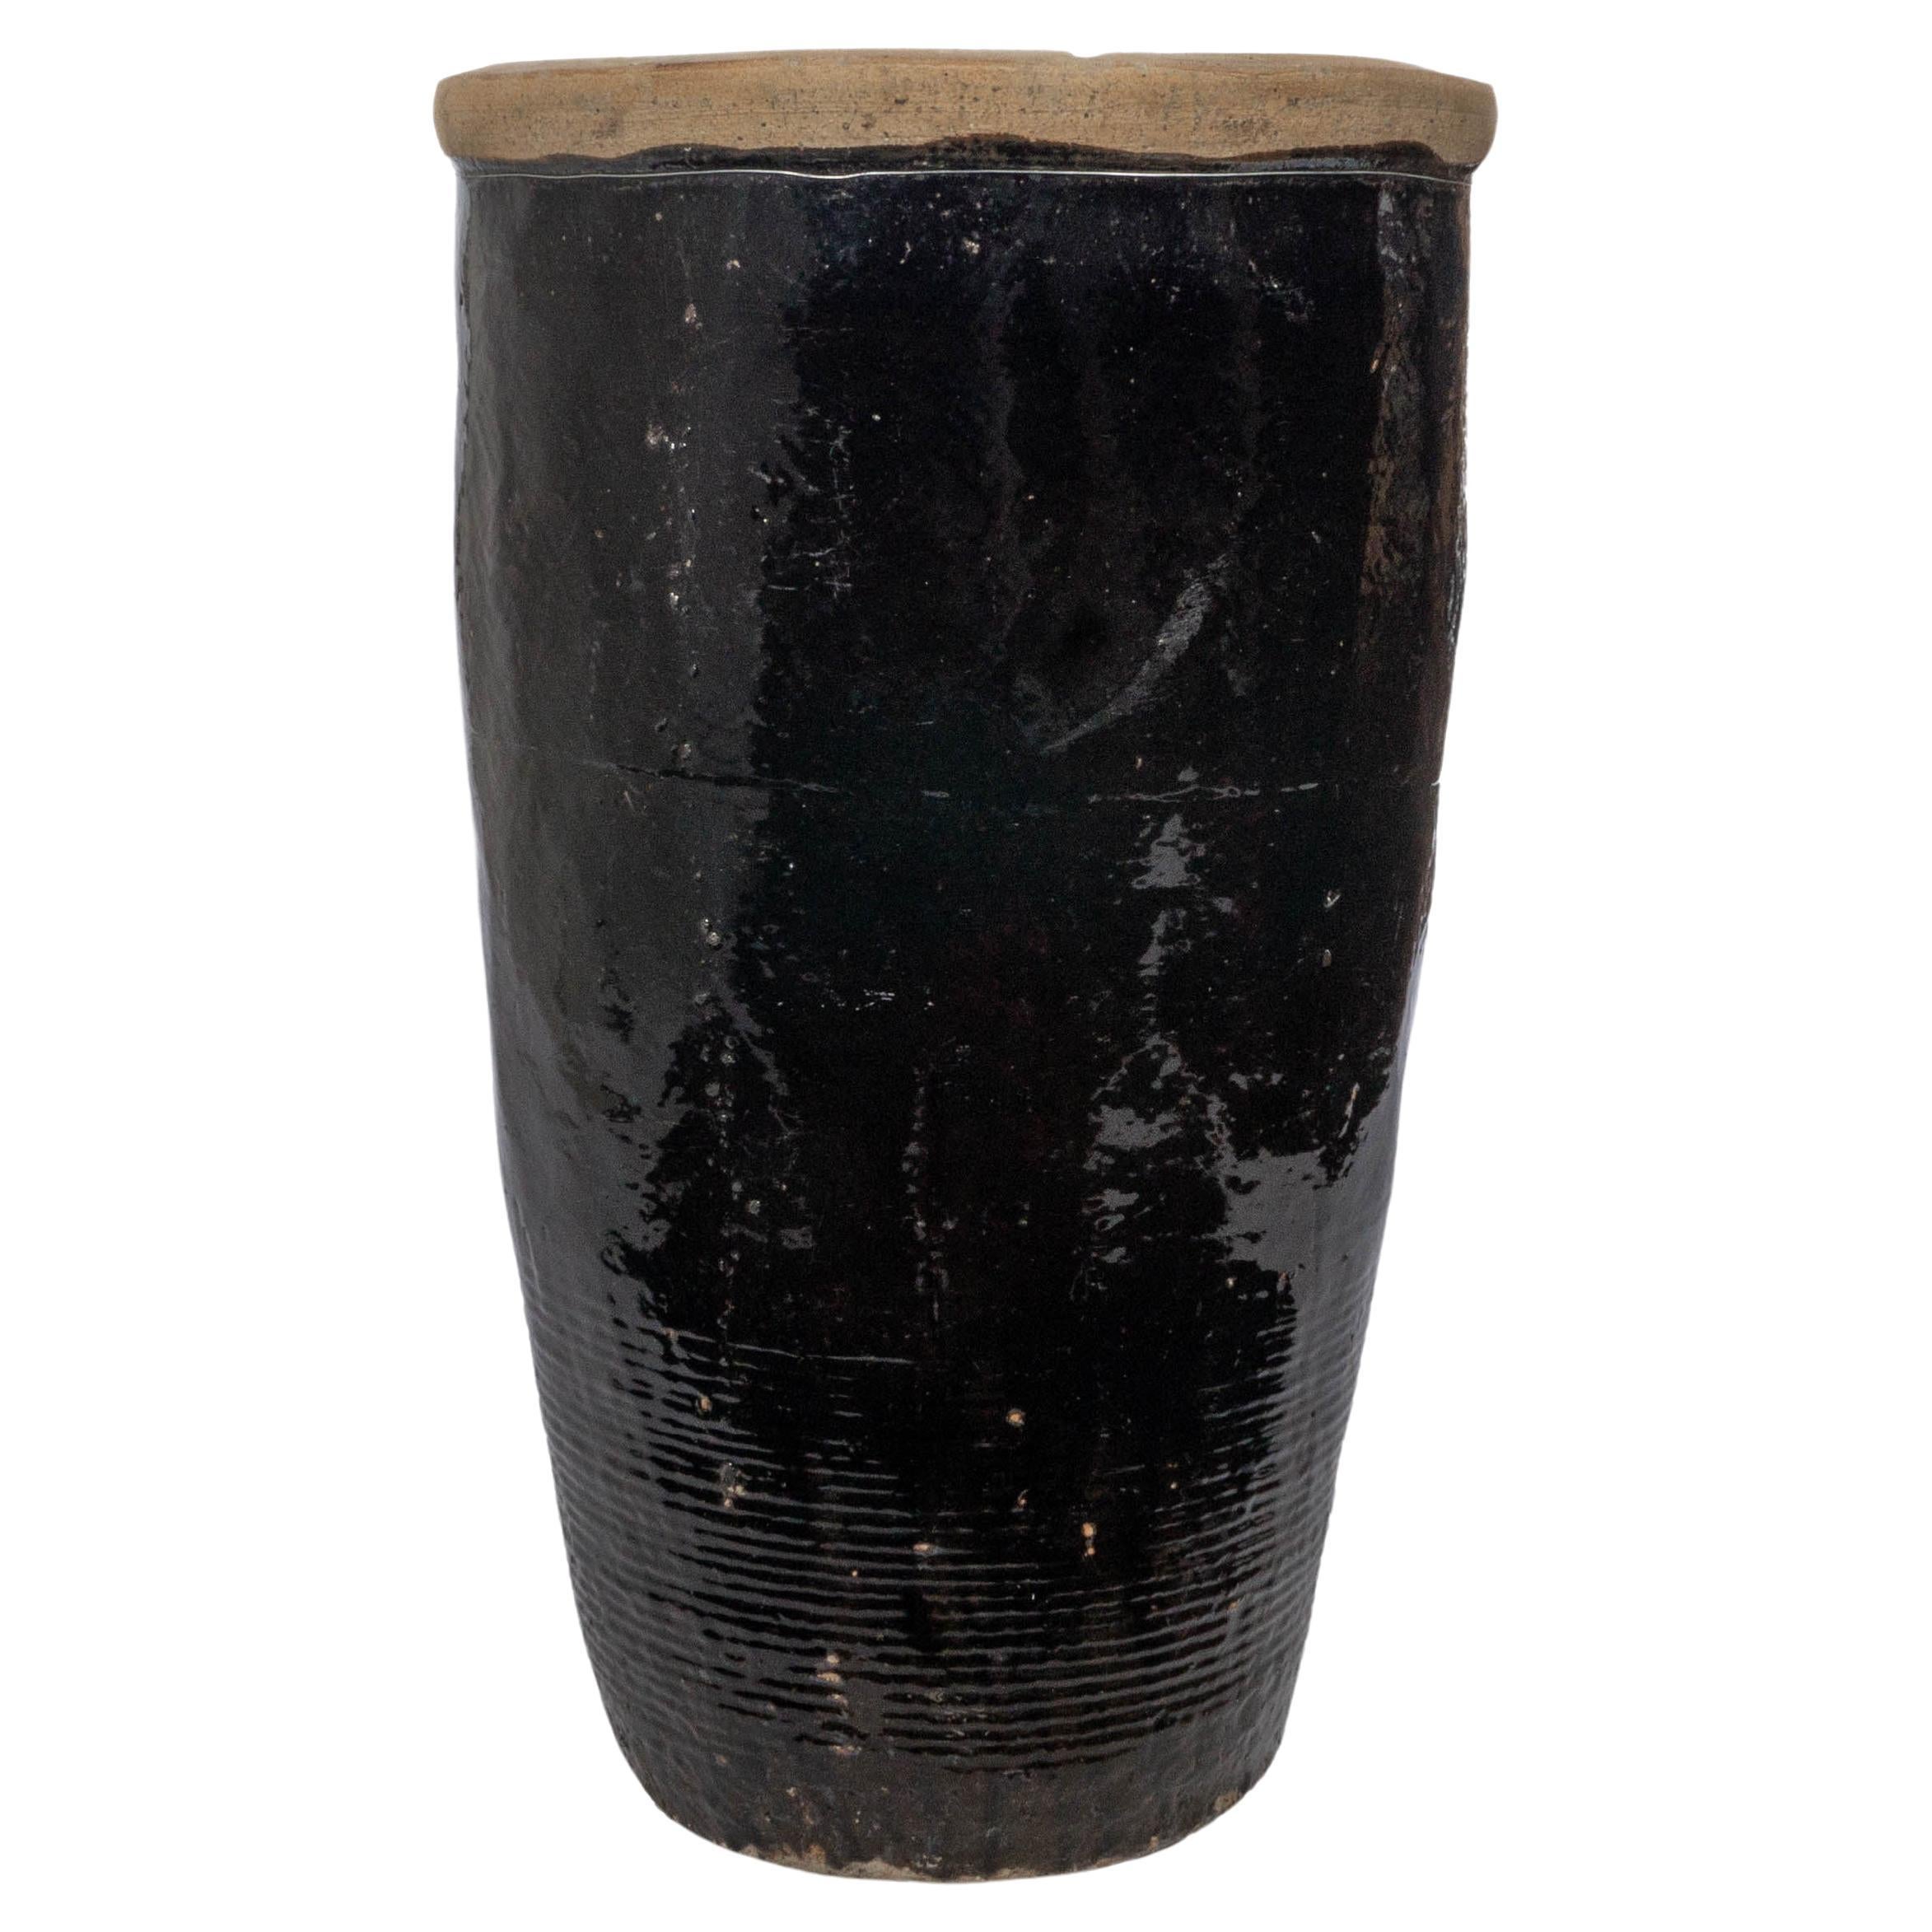 Tall Black Glazed Terracotta Storage Jar